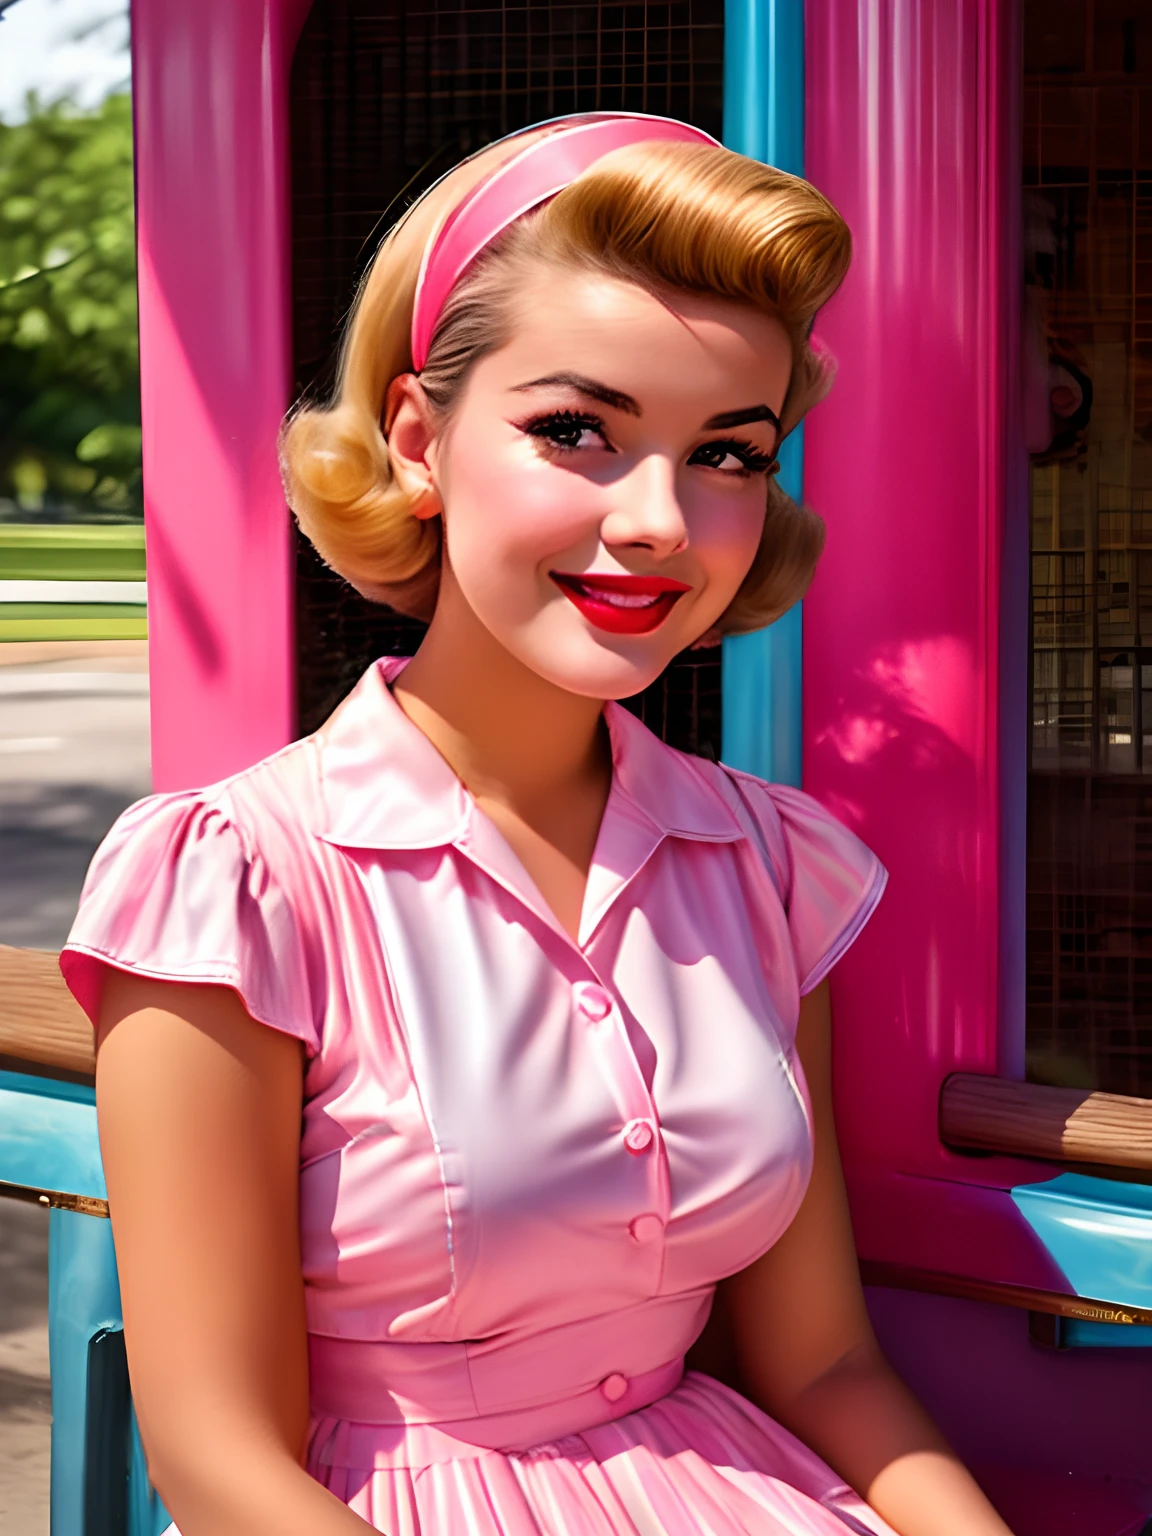 Алафед женщина в розовом и синем платье сидит на скамейке, стиль 50-х, стиль 50-х годов, retro стиль 50-х, ретро модель кинозвезды, 1 9 стиль 50-х, кинозвезда шестидесятых, Винтажное цветное фото, милая молодая женщина, Винтажный цвет 1 9 5 0 S, девушка пин-ап, атмосфера 1950-х годов